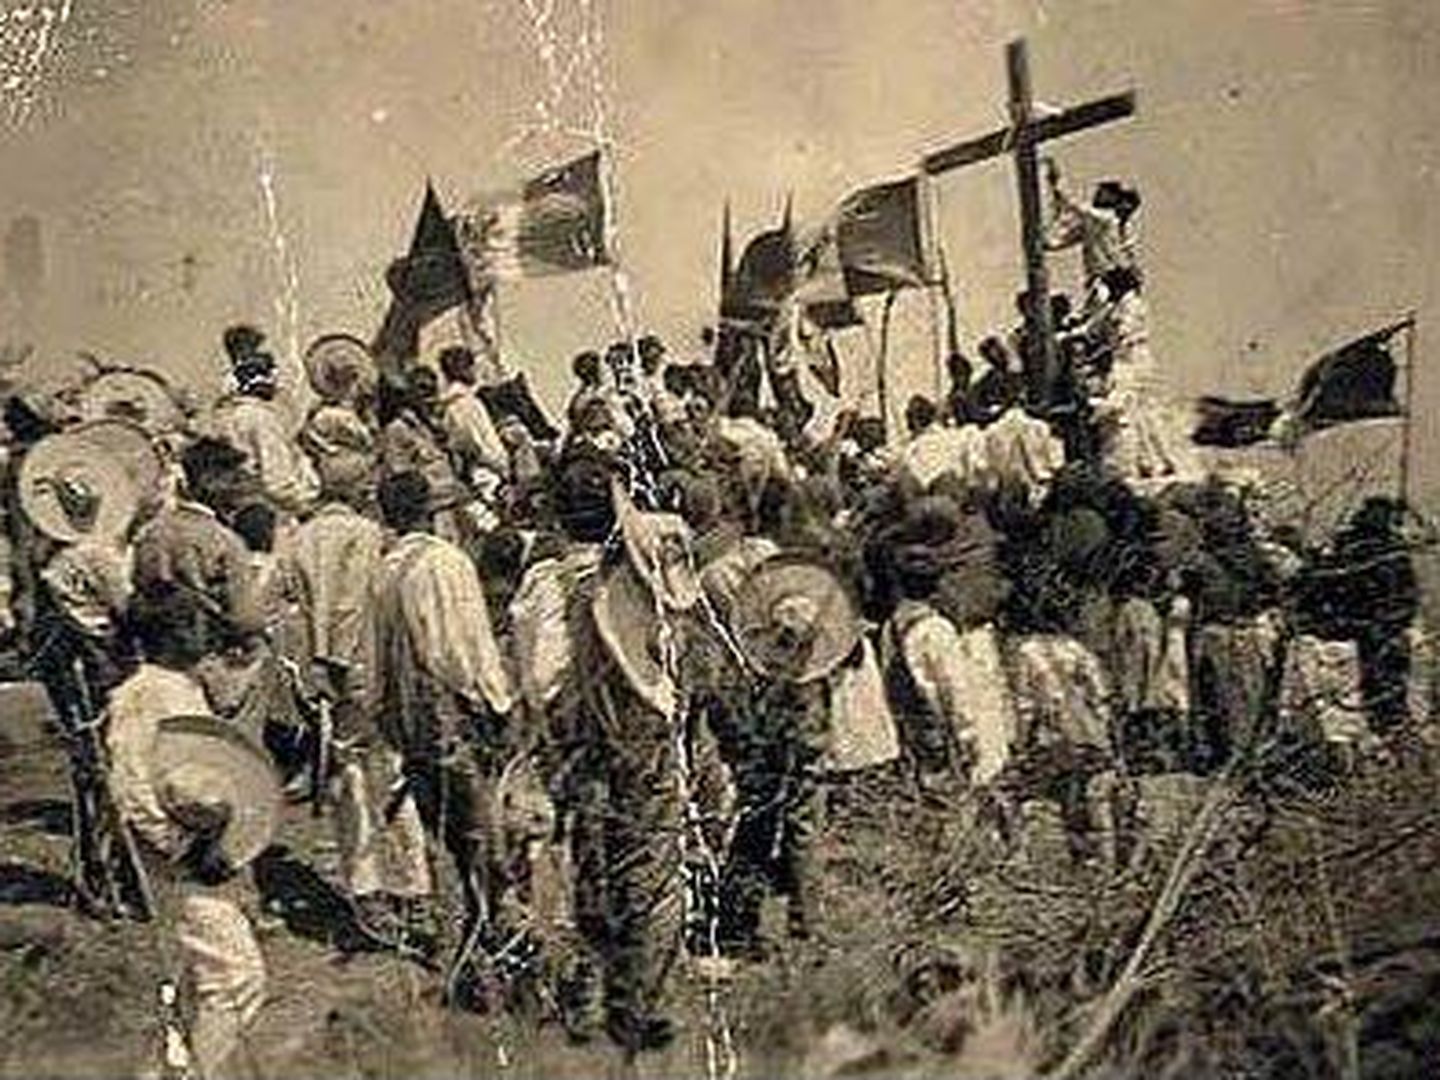 La guerra cristera tuvo lugar entre 1926 y 1929 en México